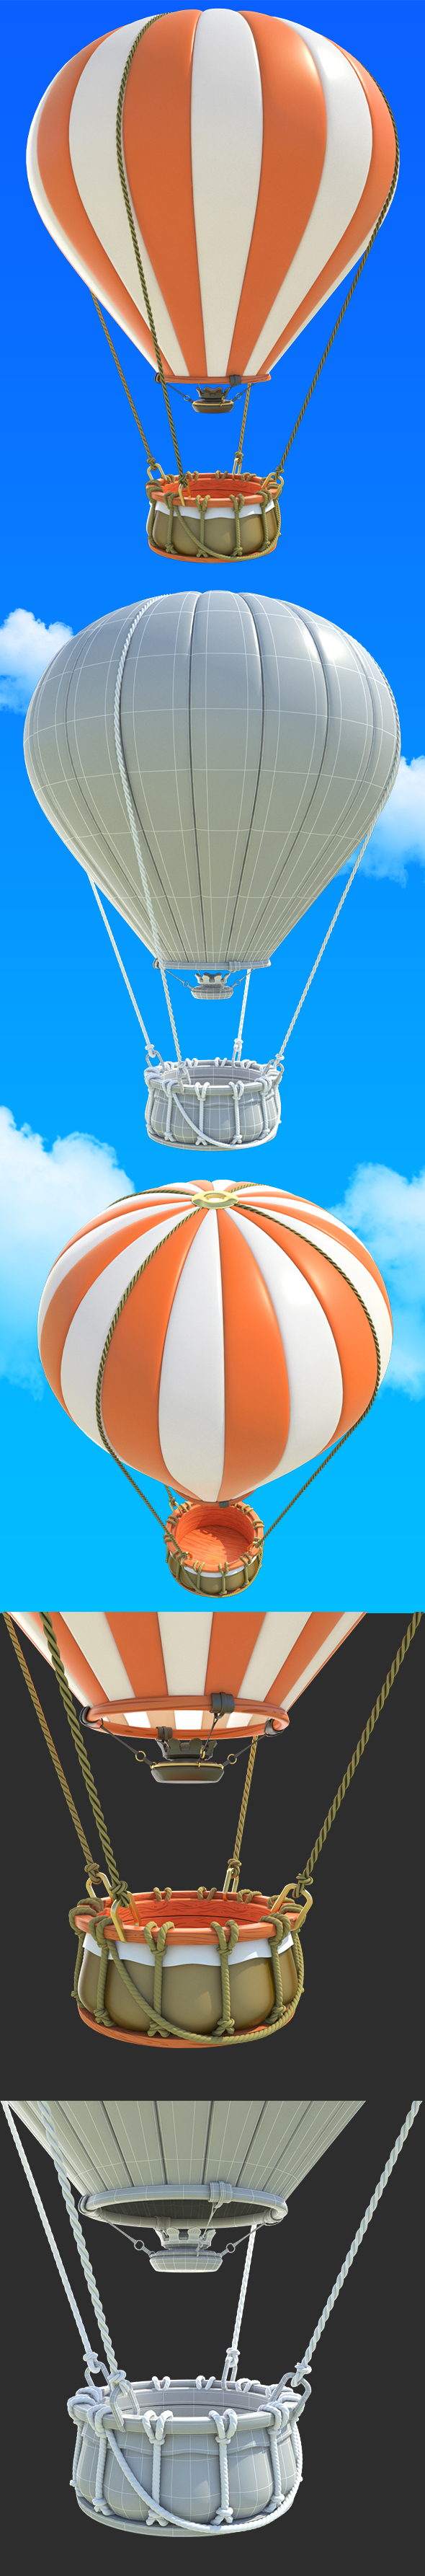 Cartoon Hot Air Balloon